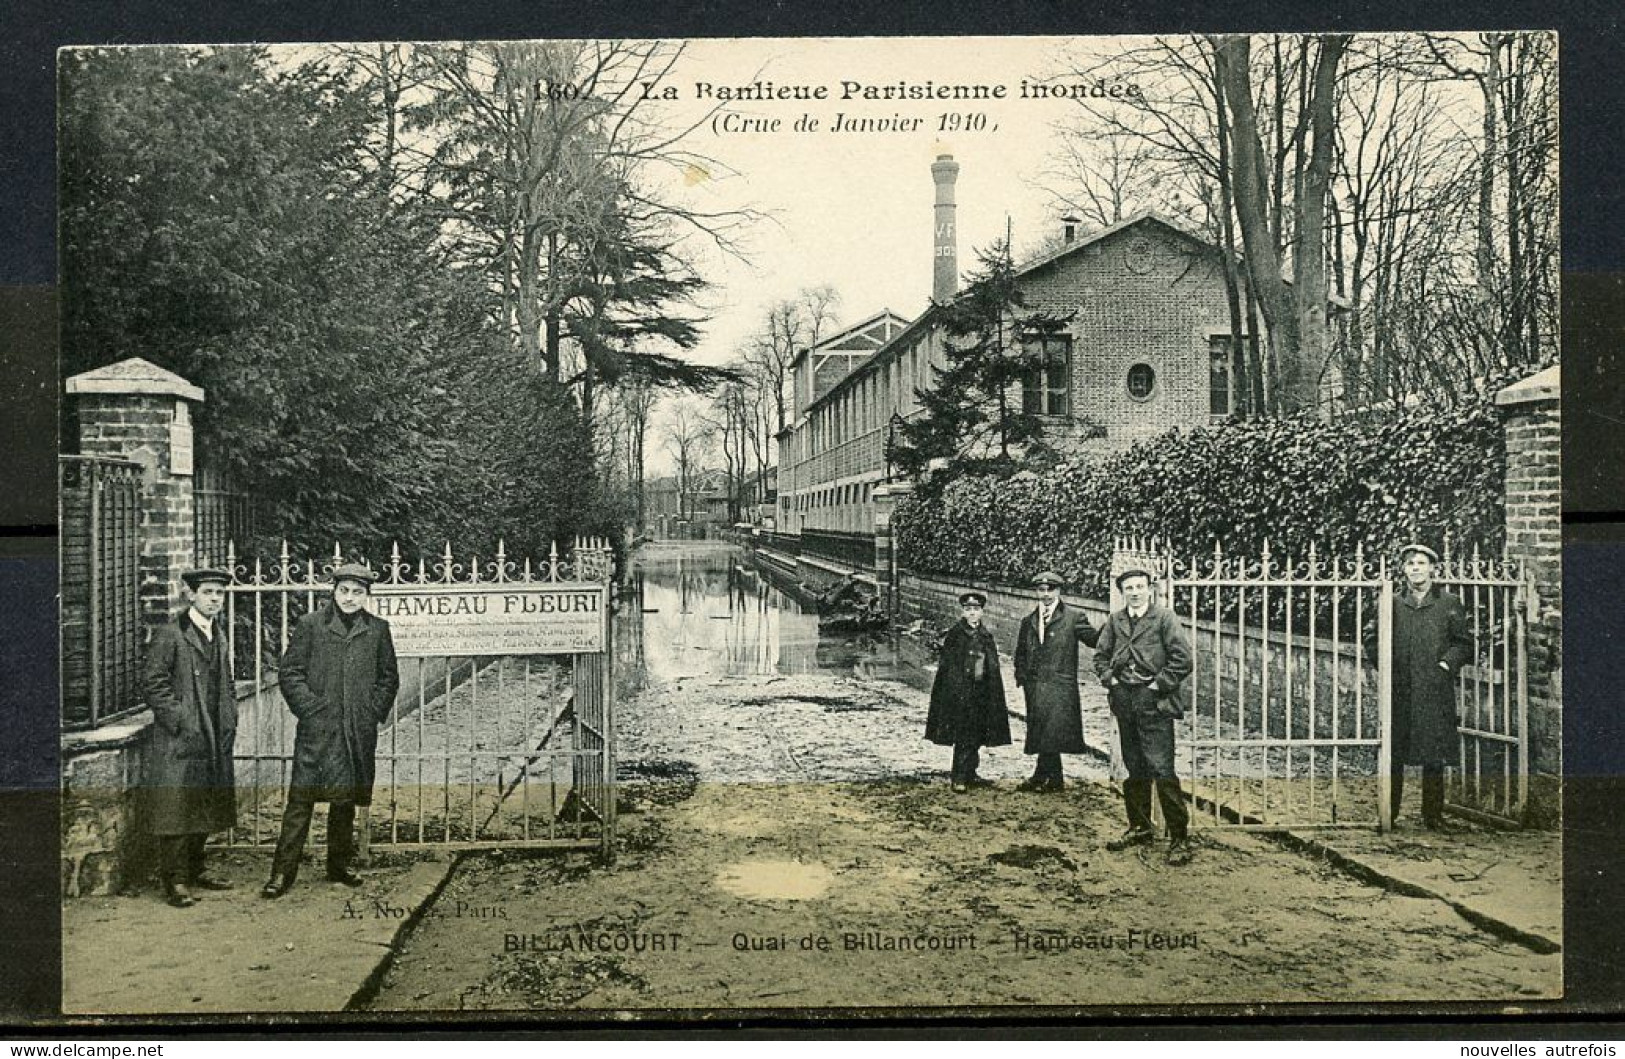 BILLANCOURT - QUAI DE BILLANCOURT -  HAMEAU FLEURI - CRUE DE JANVIER 1910,LA BANLIEUE PARISIENNE INONDEE. - Boulogne Billancourt